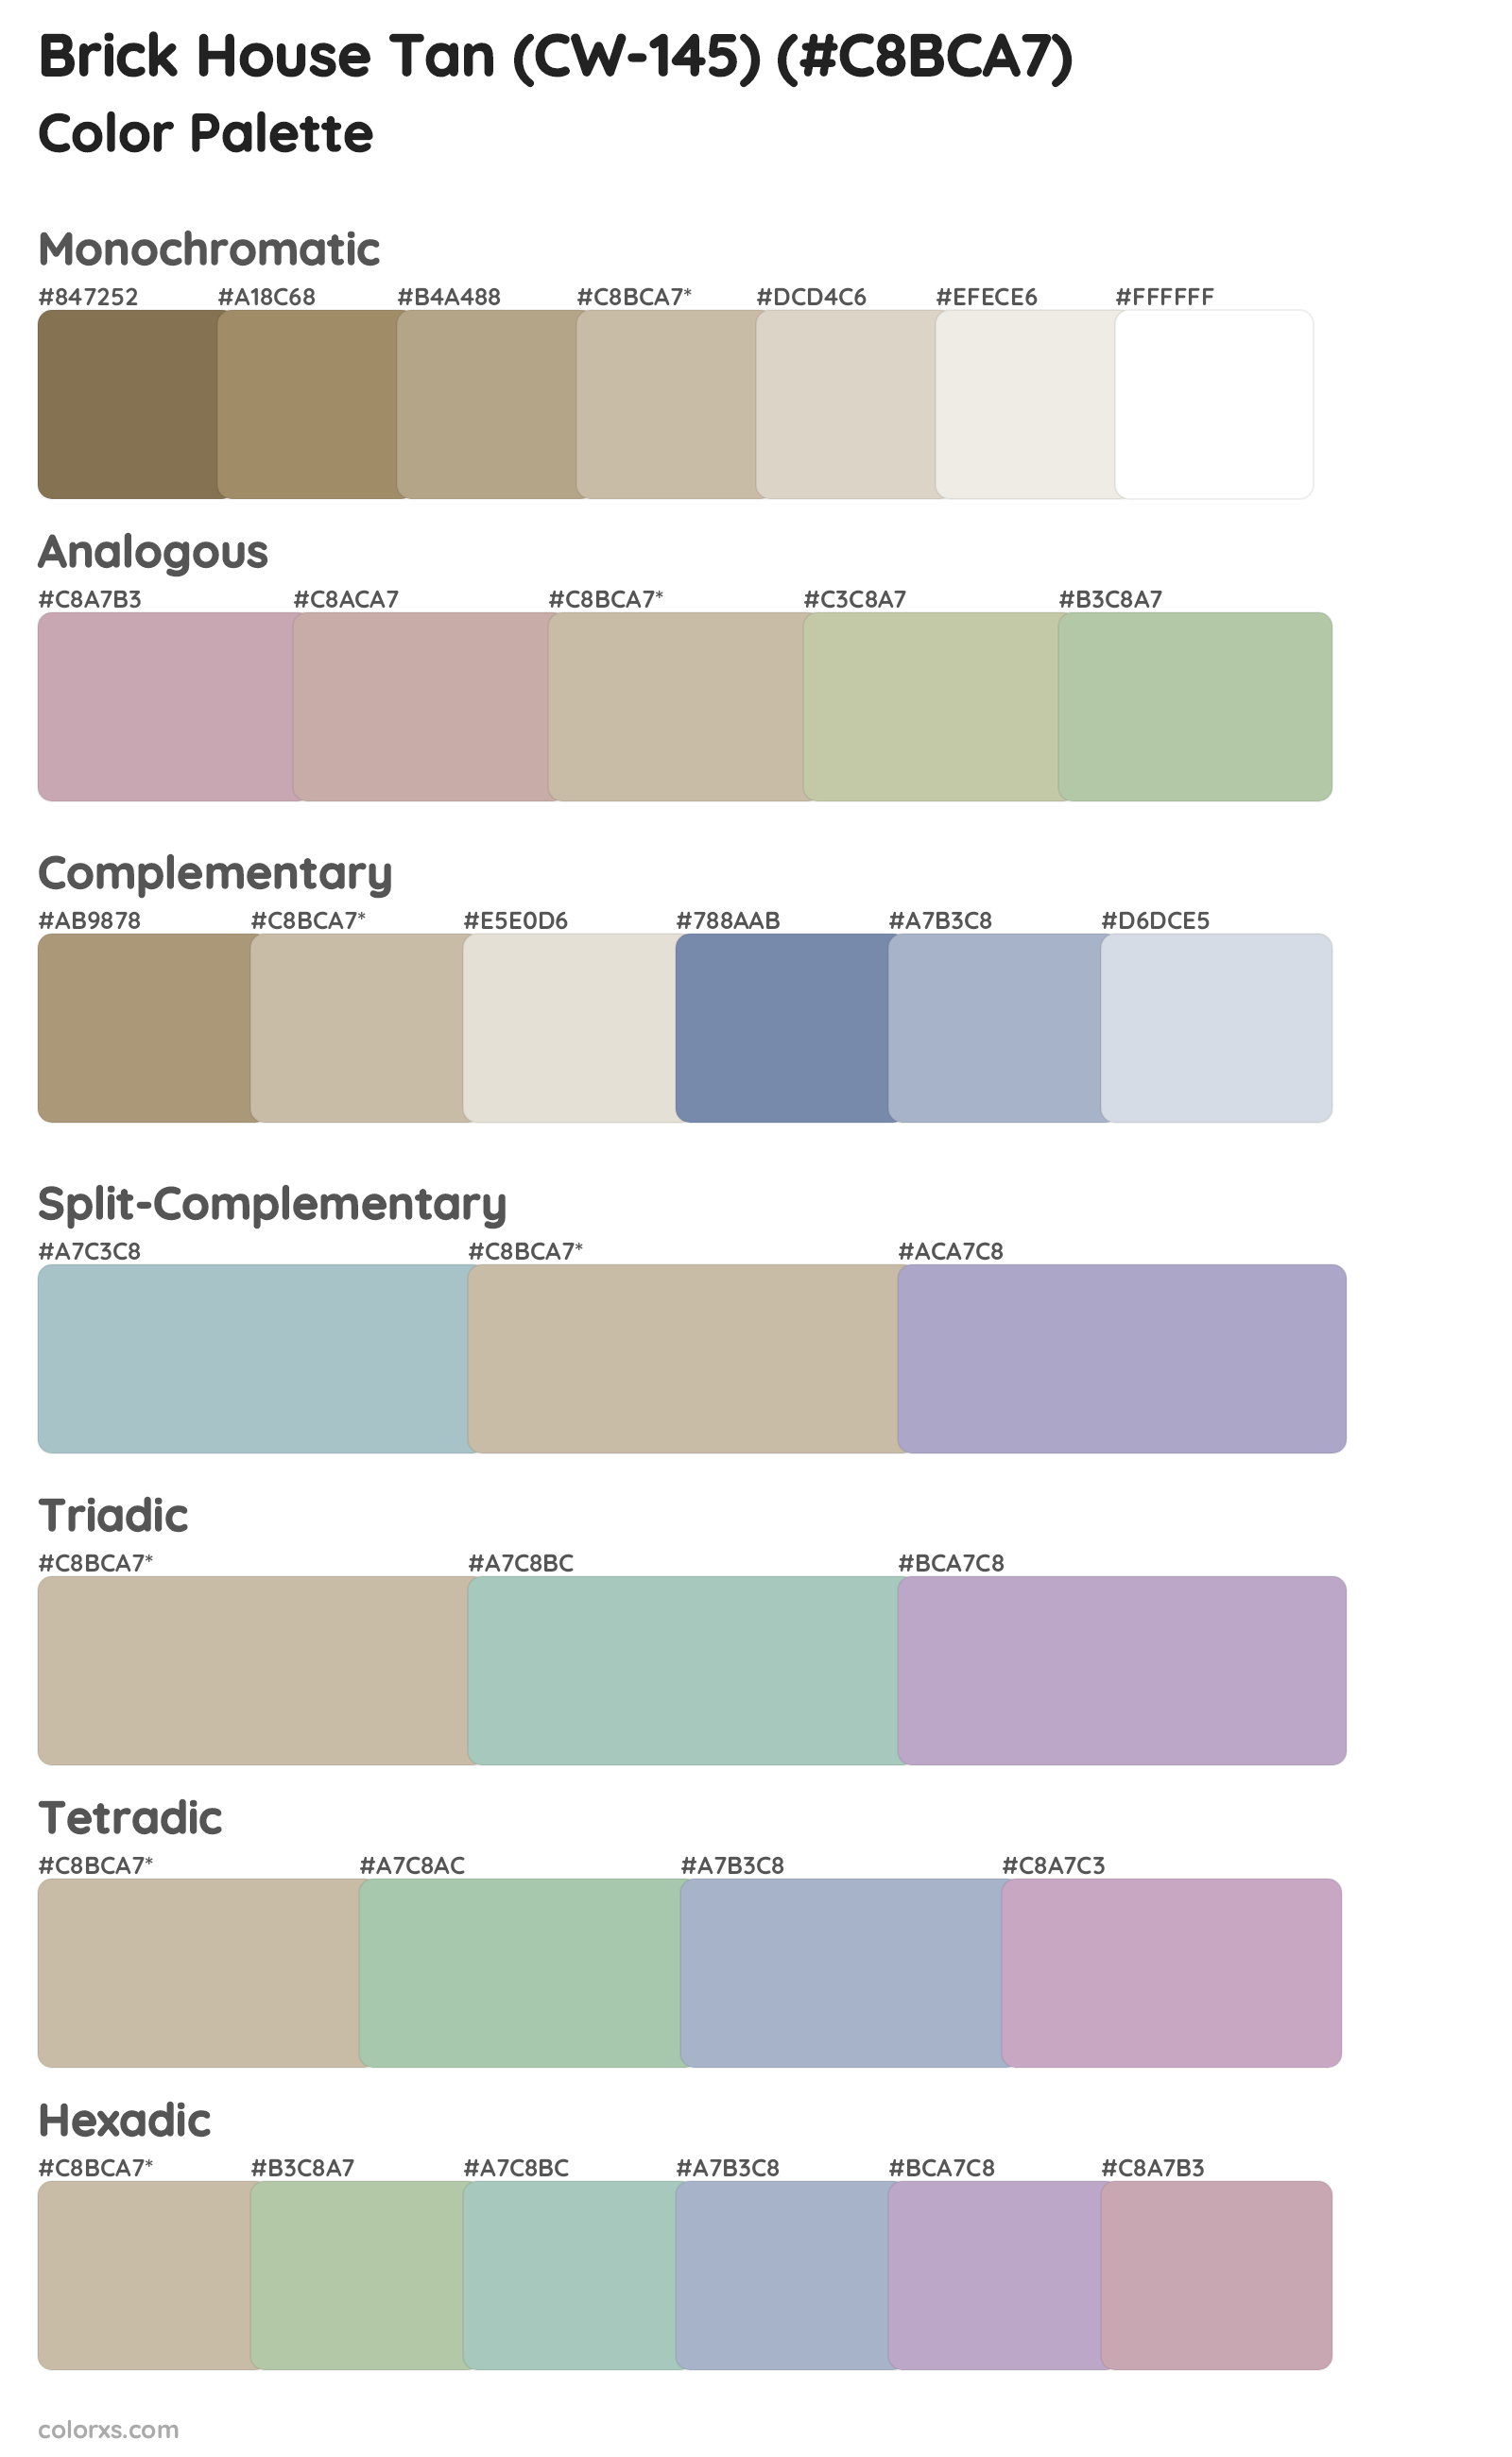 Brick House Tan (CW-145) Color Scheme Palettes